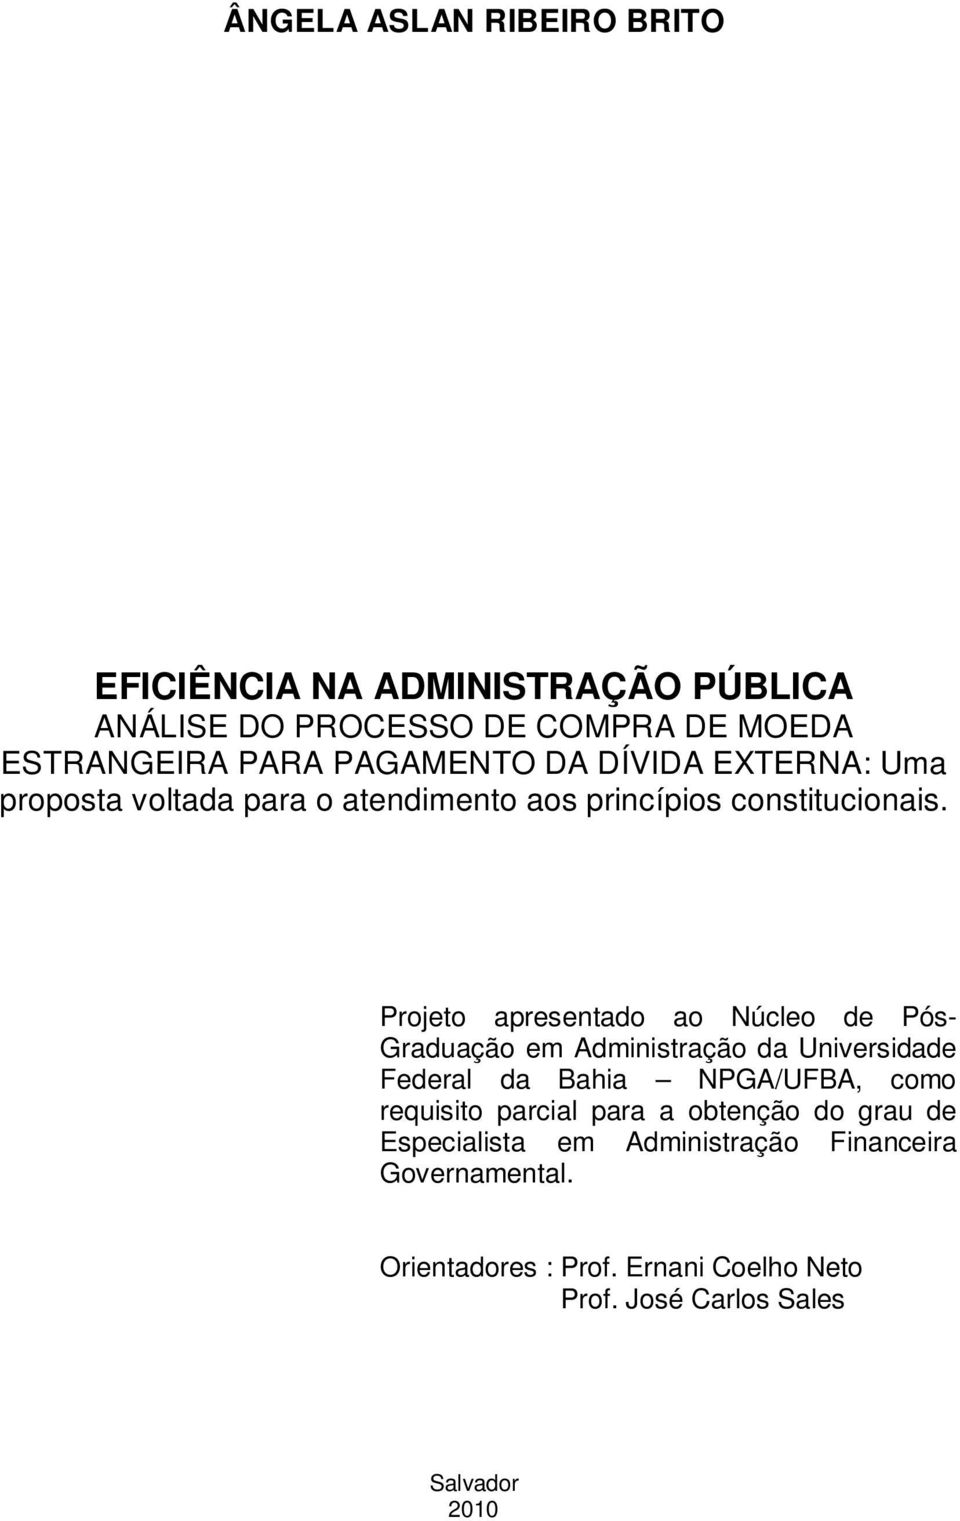 Projeto apresentado ao Núcleo de Pós- Graduação em Administração da Universidade Federal da Bahia NPGA/UFBA, como requisito